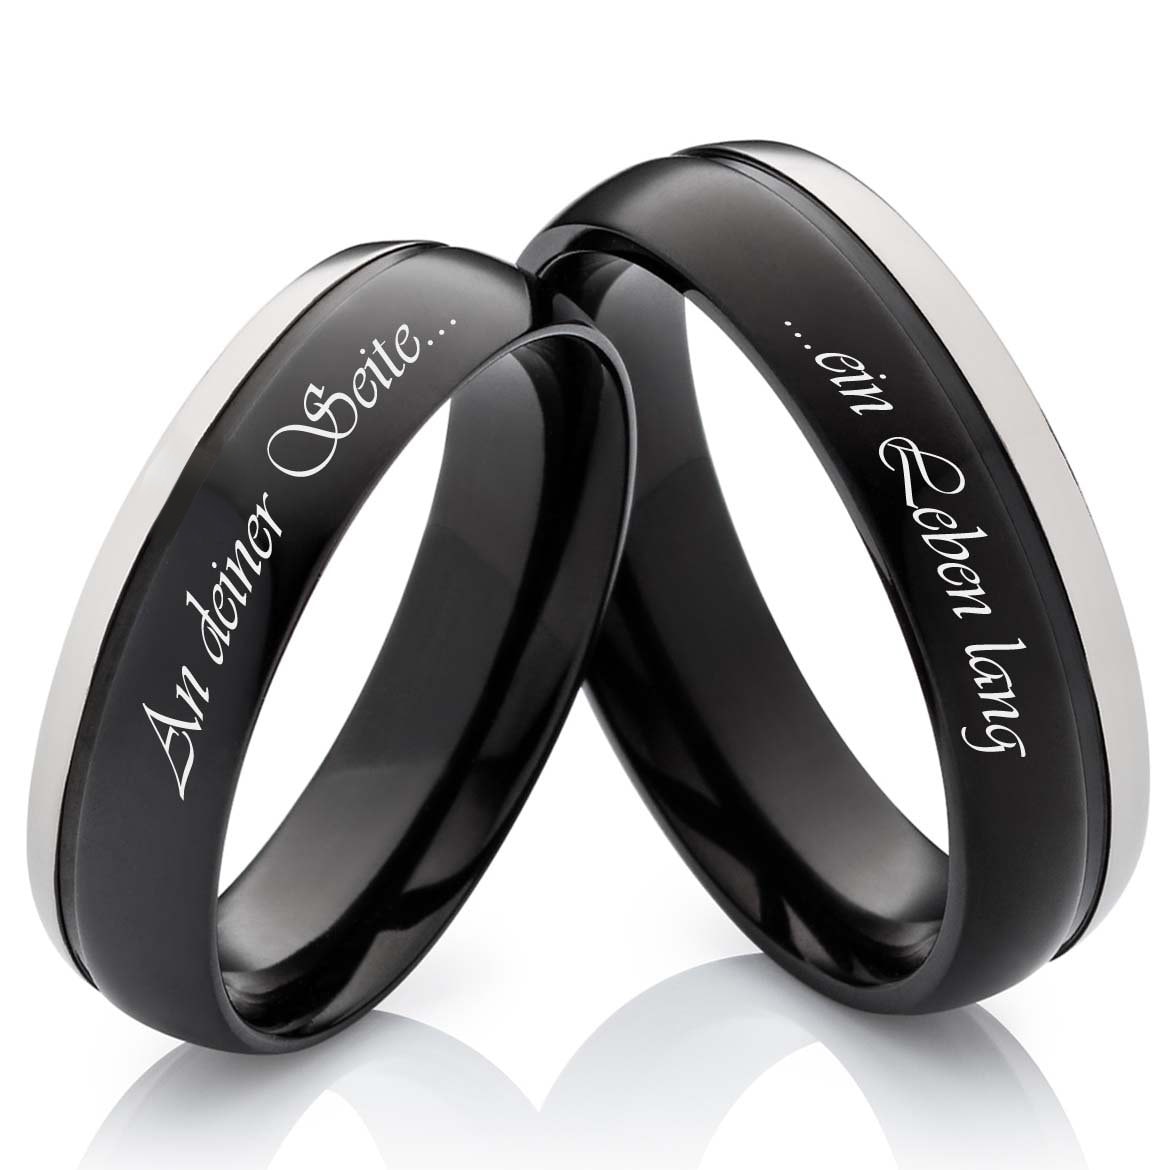 2 Matching Rings Couple Ring Black Gold Plated 1CT CZ Women Wedding Ring  Sets Men Ring - Walmart.com | Black wedding rings, Black diamond wedding  rings, Black rings